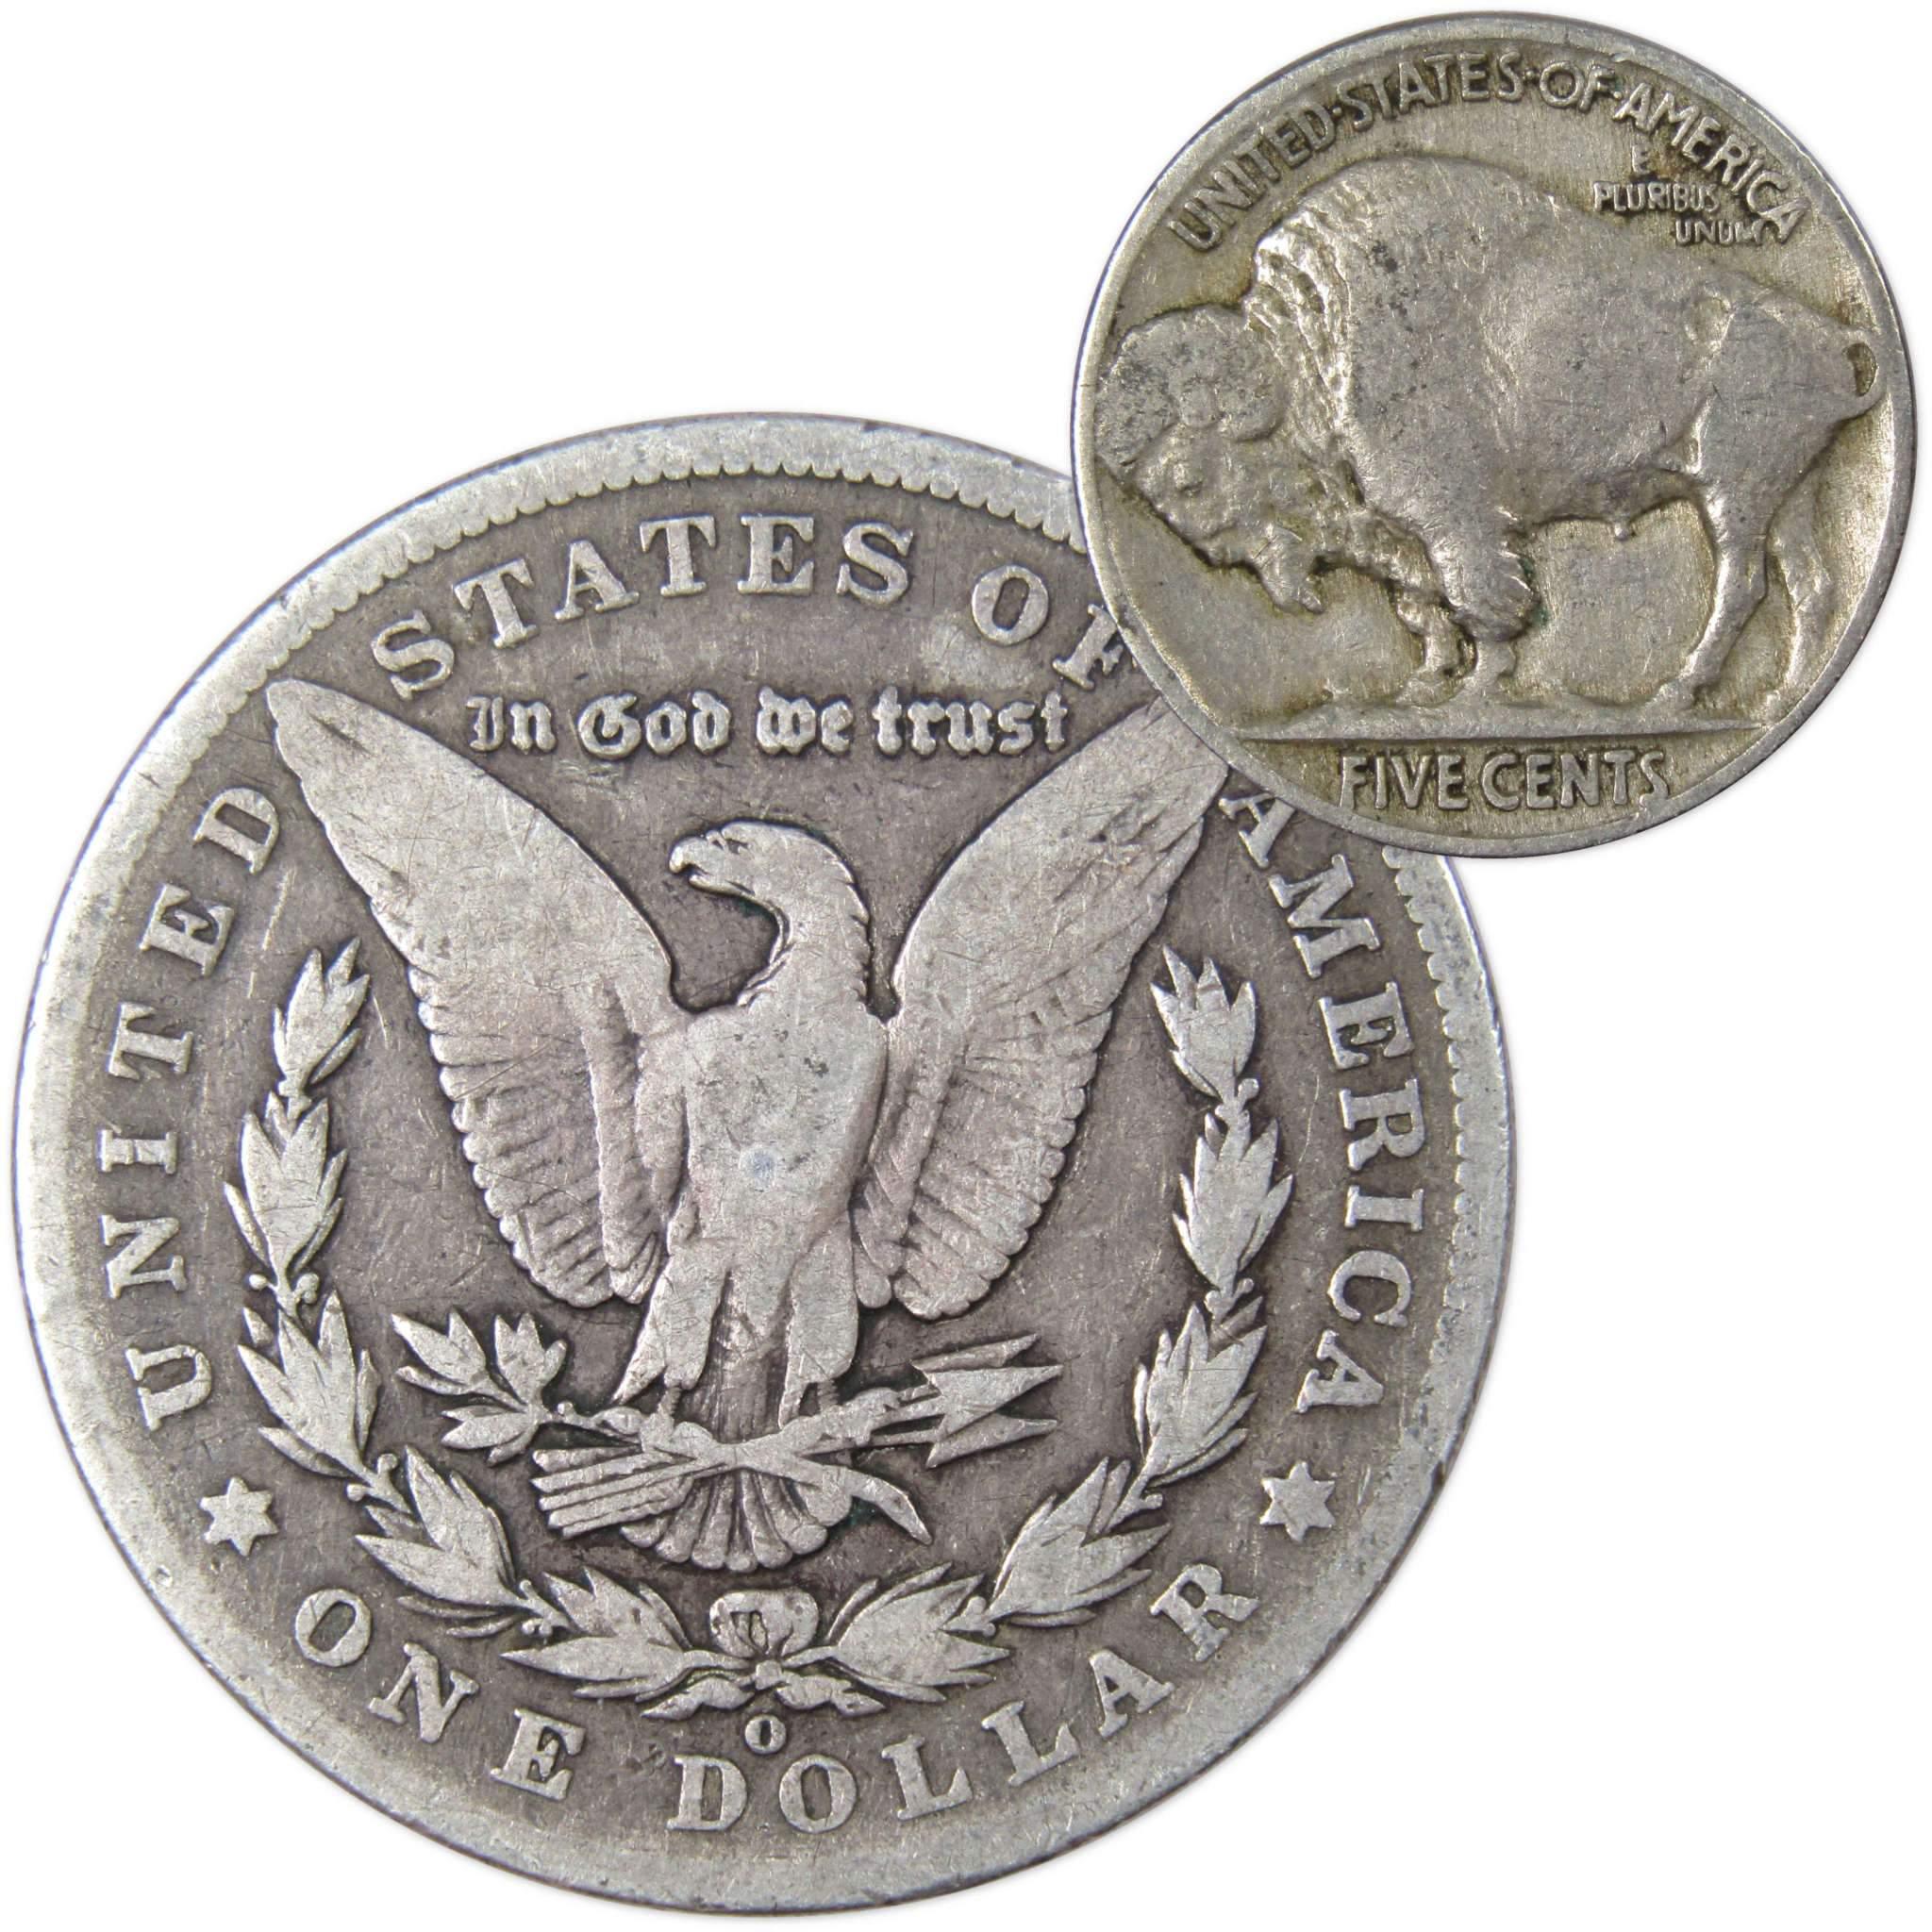 1902 O Morgan Dollar VG Very Good 90% Silver with 1934 Buffalo Nickel F Fine - Morgan coin - Morgan silver dollar - Morgan silver dollar for sale - Profile Coins &amp; Collectibles